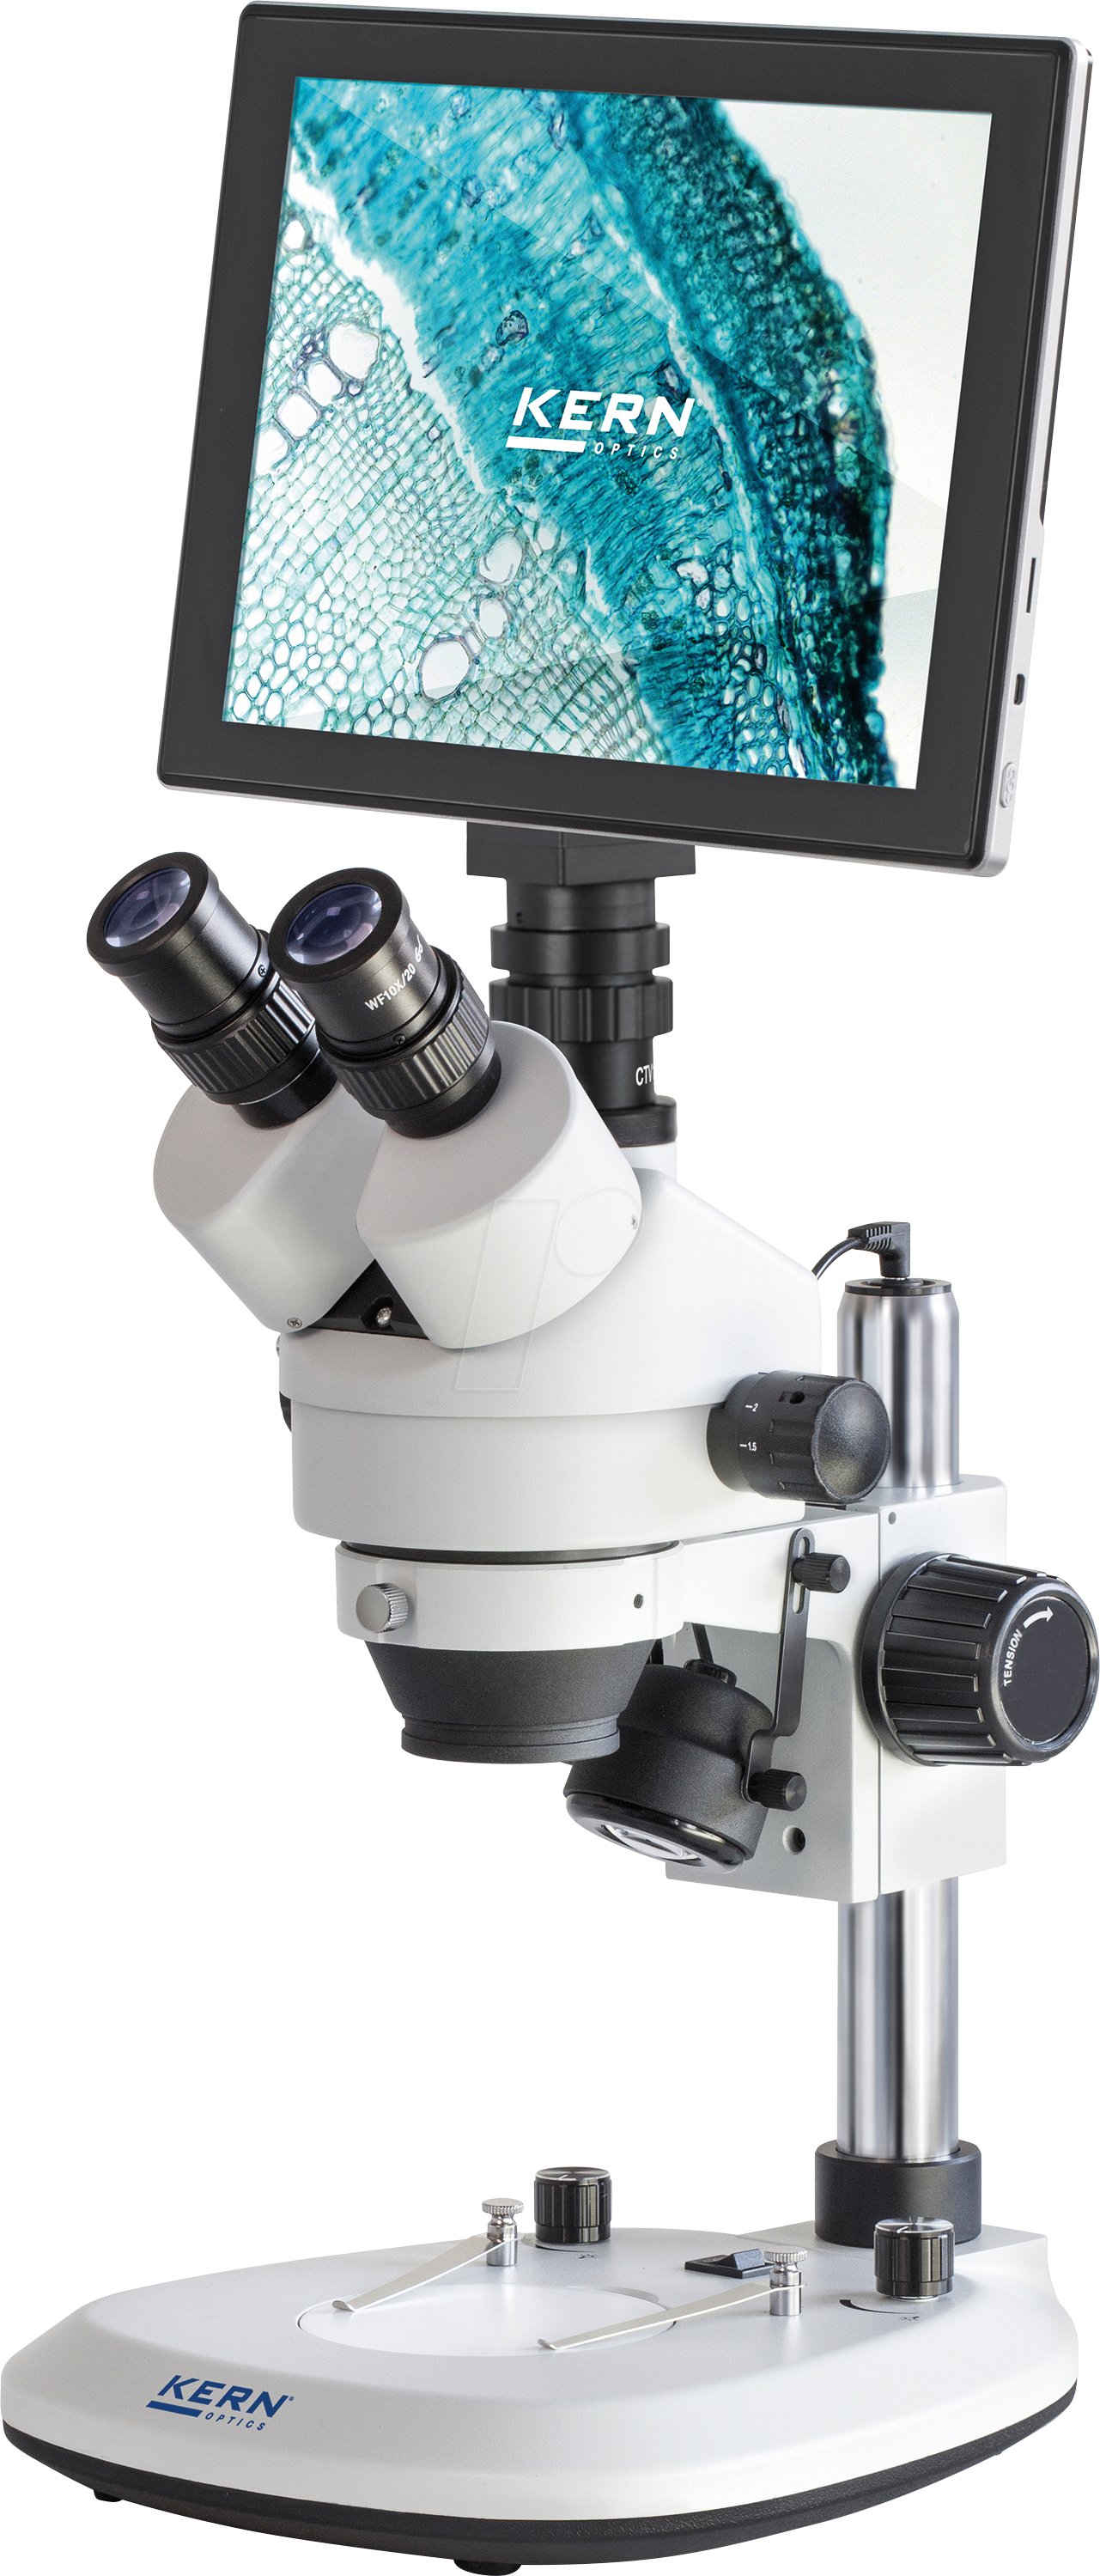 KS OZL 464T241 - Stereomikroskop, 0,7x/4x, trinokular, Zoom, mit Tablet-Kamera von KERN-SOHN